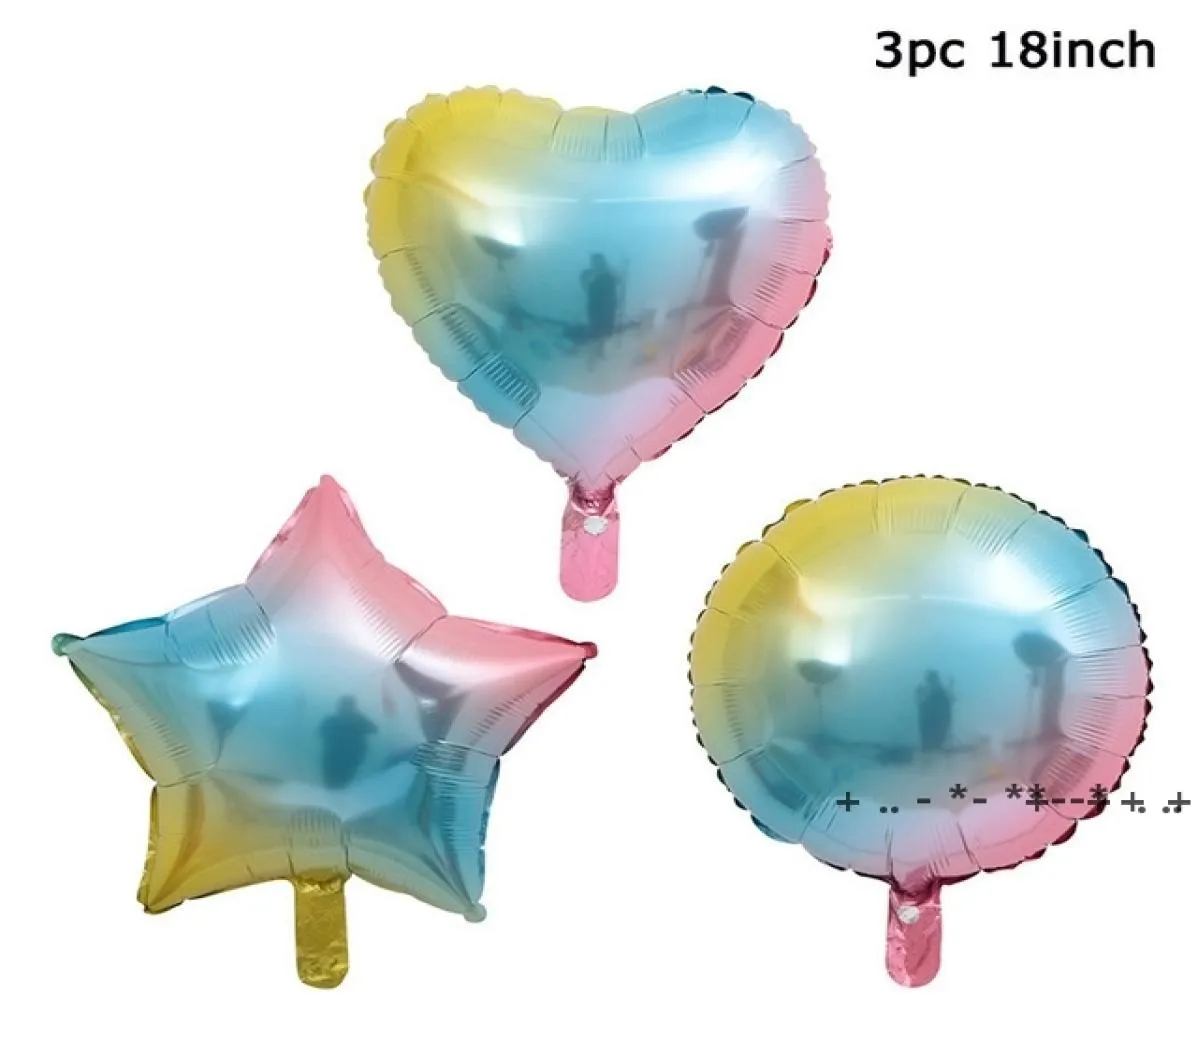 Nuovo gradiente da 18 pollici a forma di cuore a forma di heart a forma di palloncini a palloncino arcobaleno in alluminio decorazioni per feste di compleanno in alluminio rrb144964296546